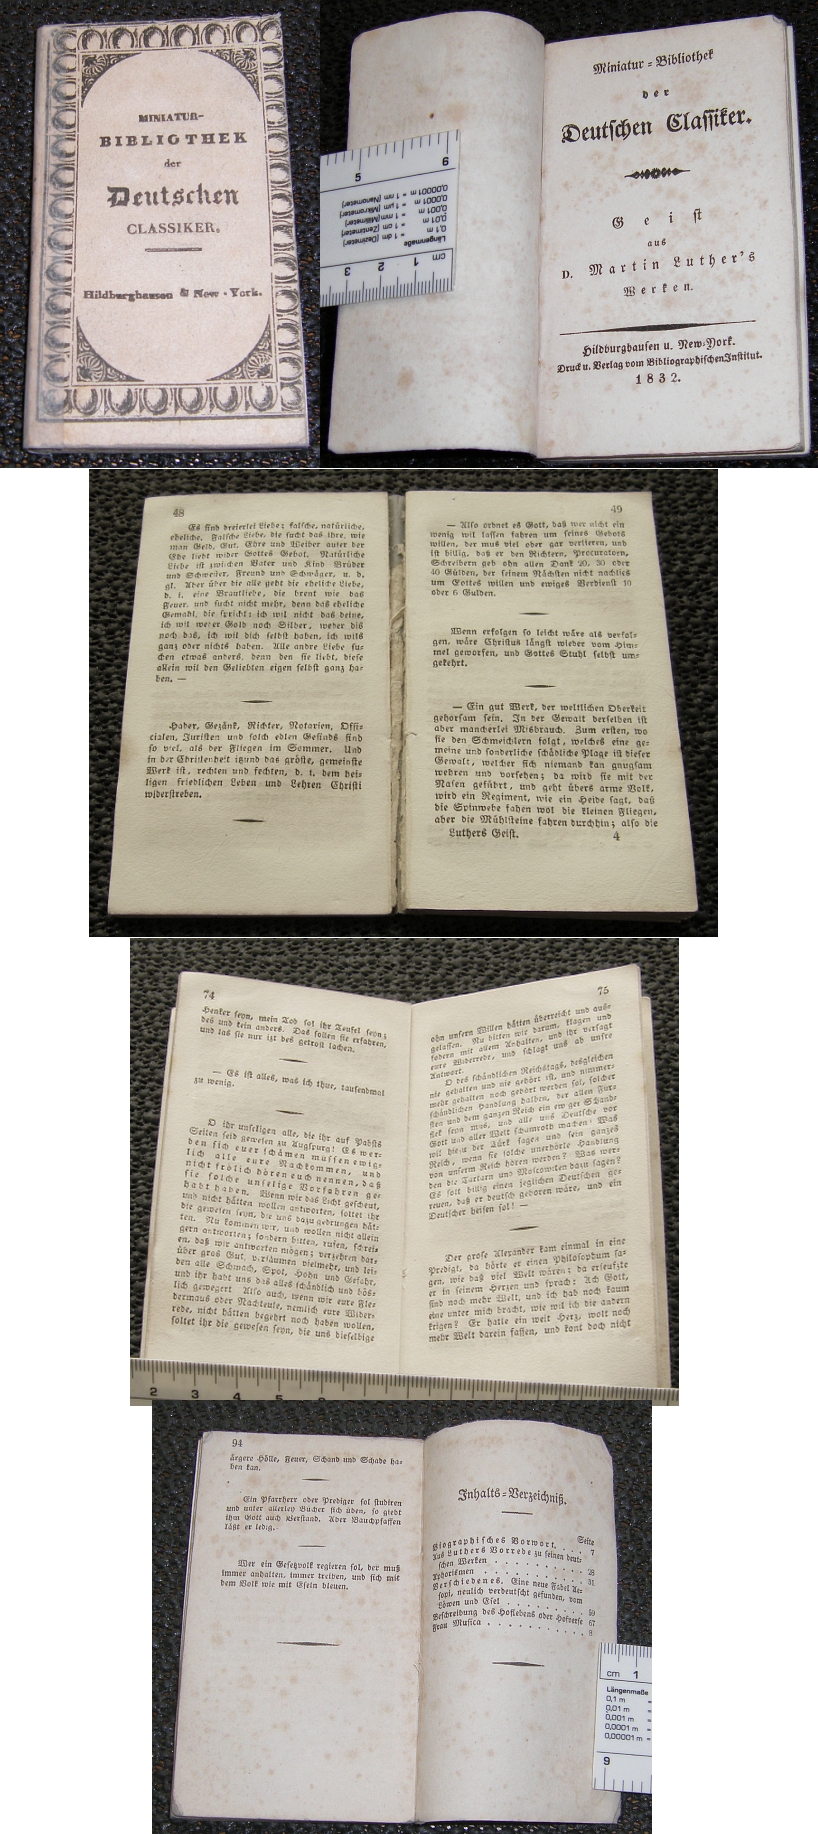 MINIATUR-BIBLIOTHEK der Deutschen Classiker 1832 Geist aus Martin Luther's Werken - 40,00 Eur